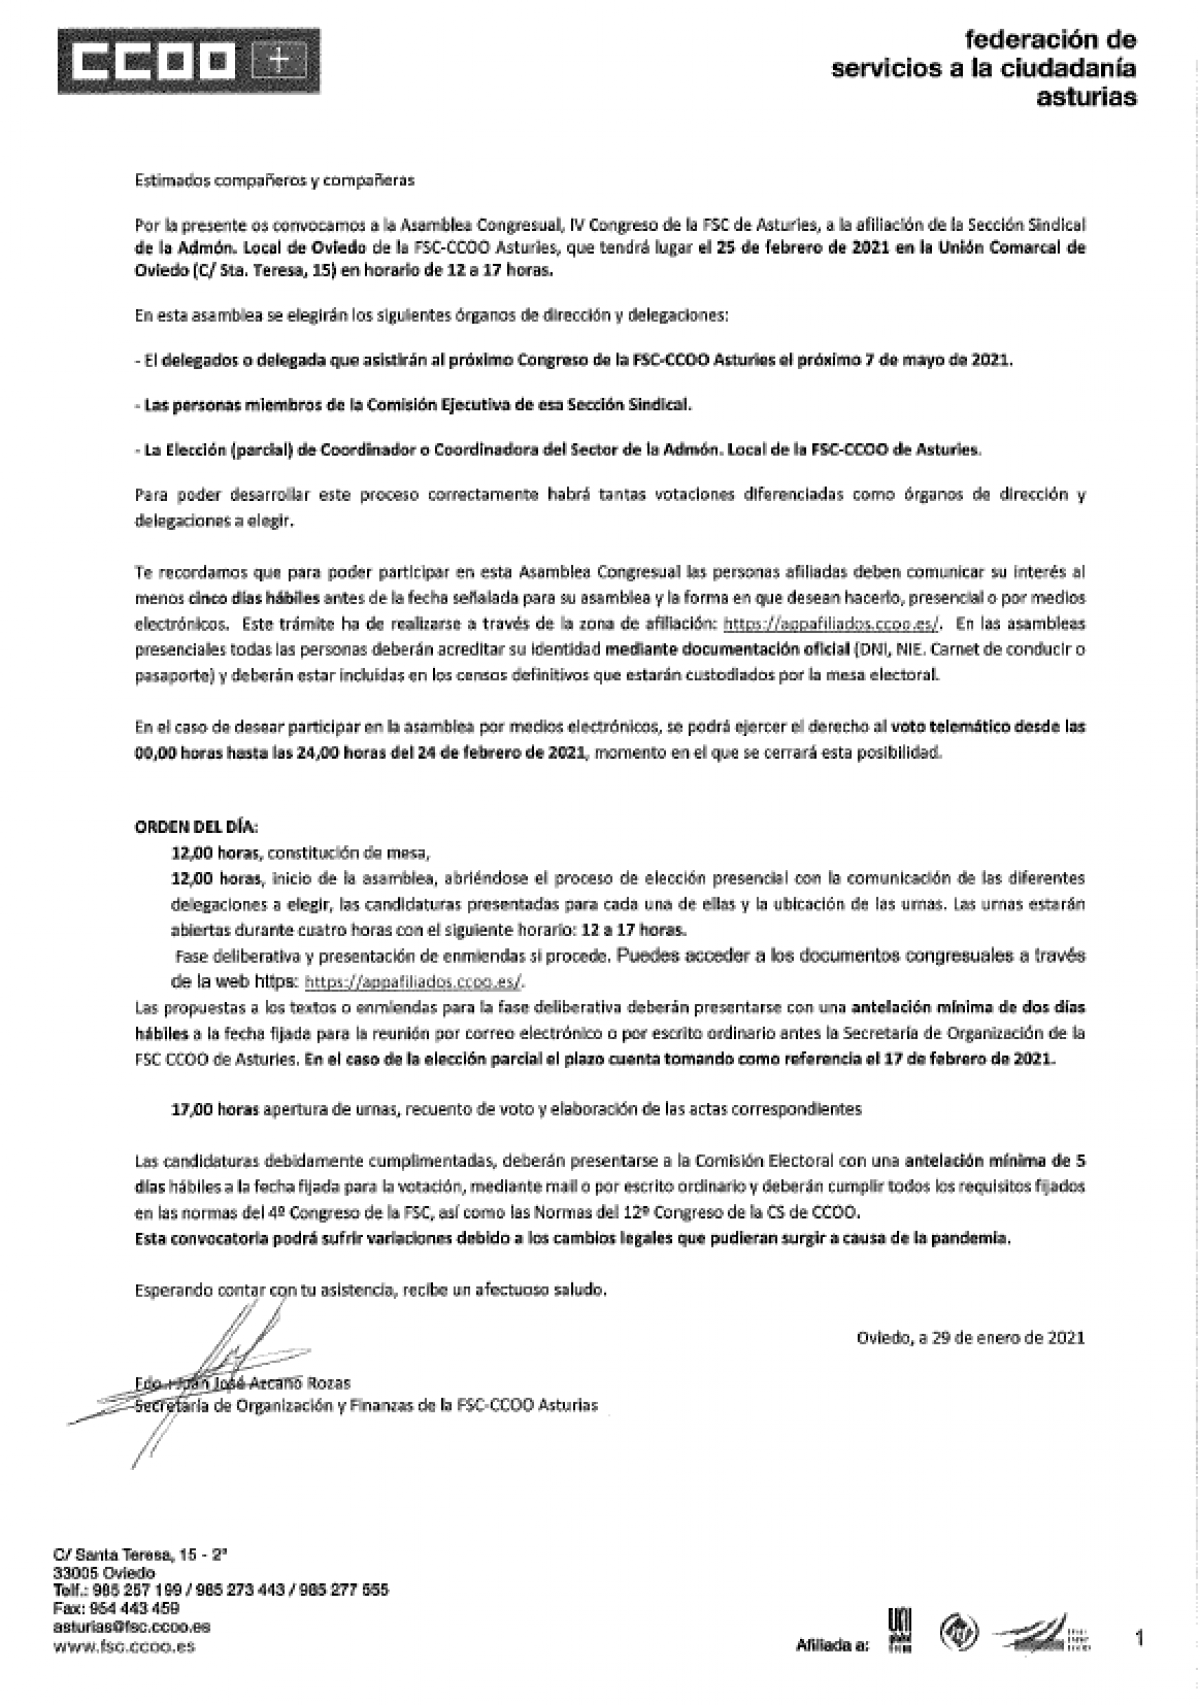 Convocatoria asamblea SS Admón Local Oviedo 25-02-2021. FSC Asturias